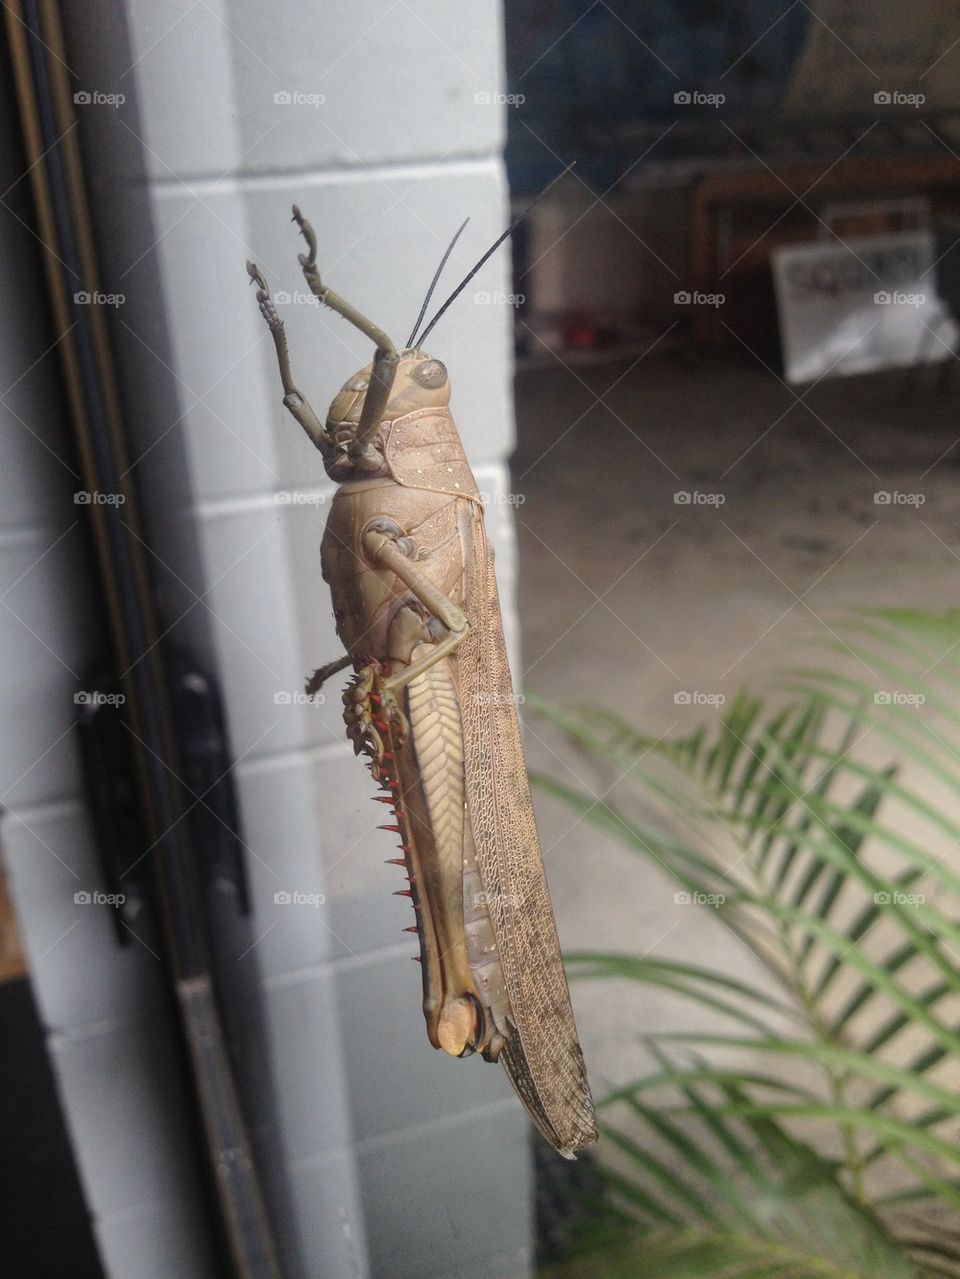 Giant locust close up